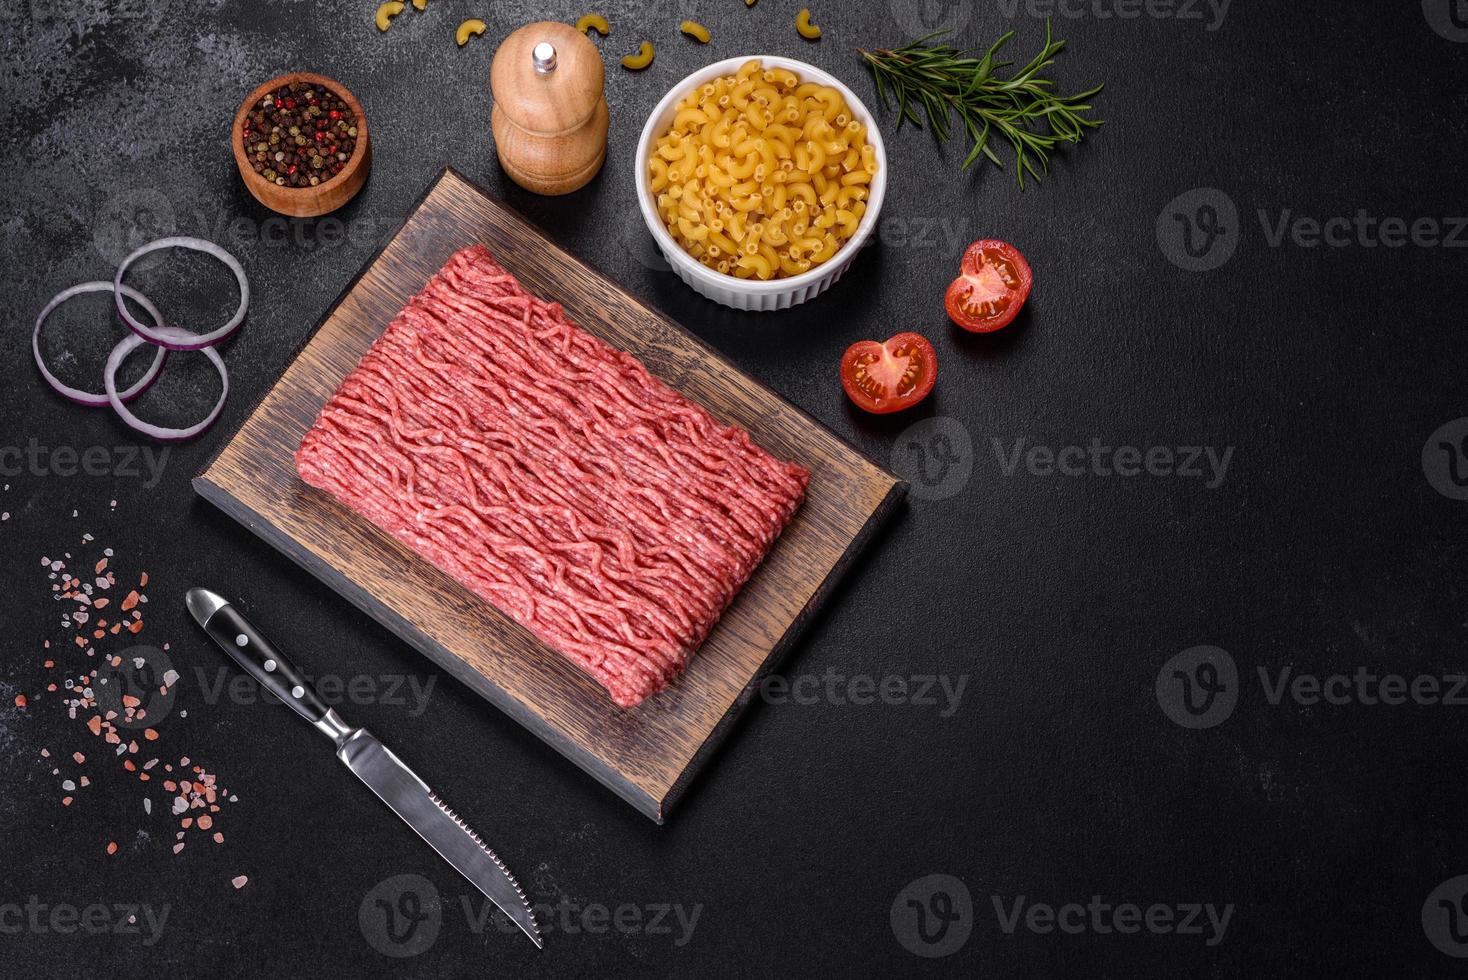 frisches rohes hackfleisch mit gewürzen und kräutern auf dunklem betonhintergrund foto